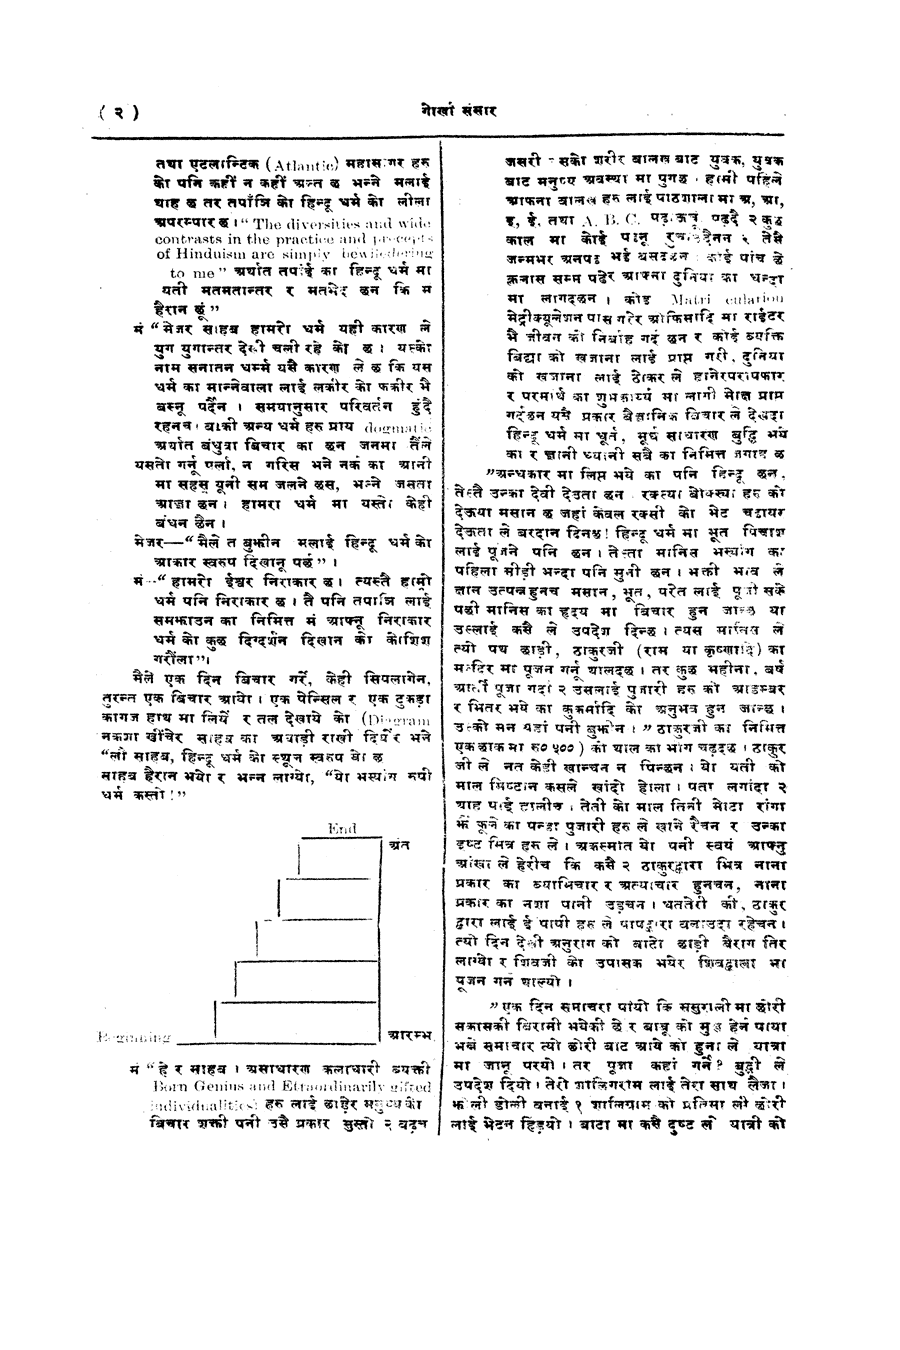 Gorkha Sansar, 27 April 1928, page 2